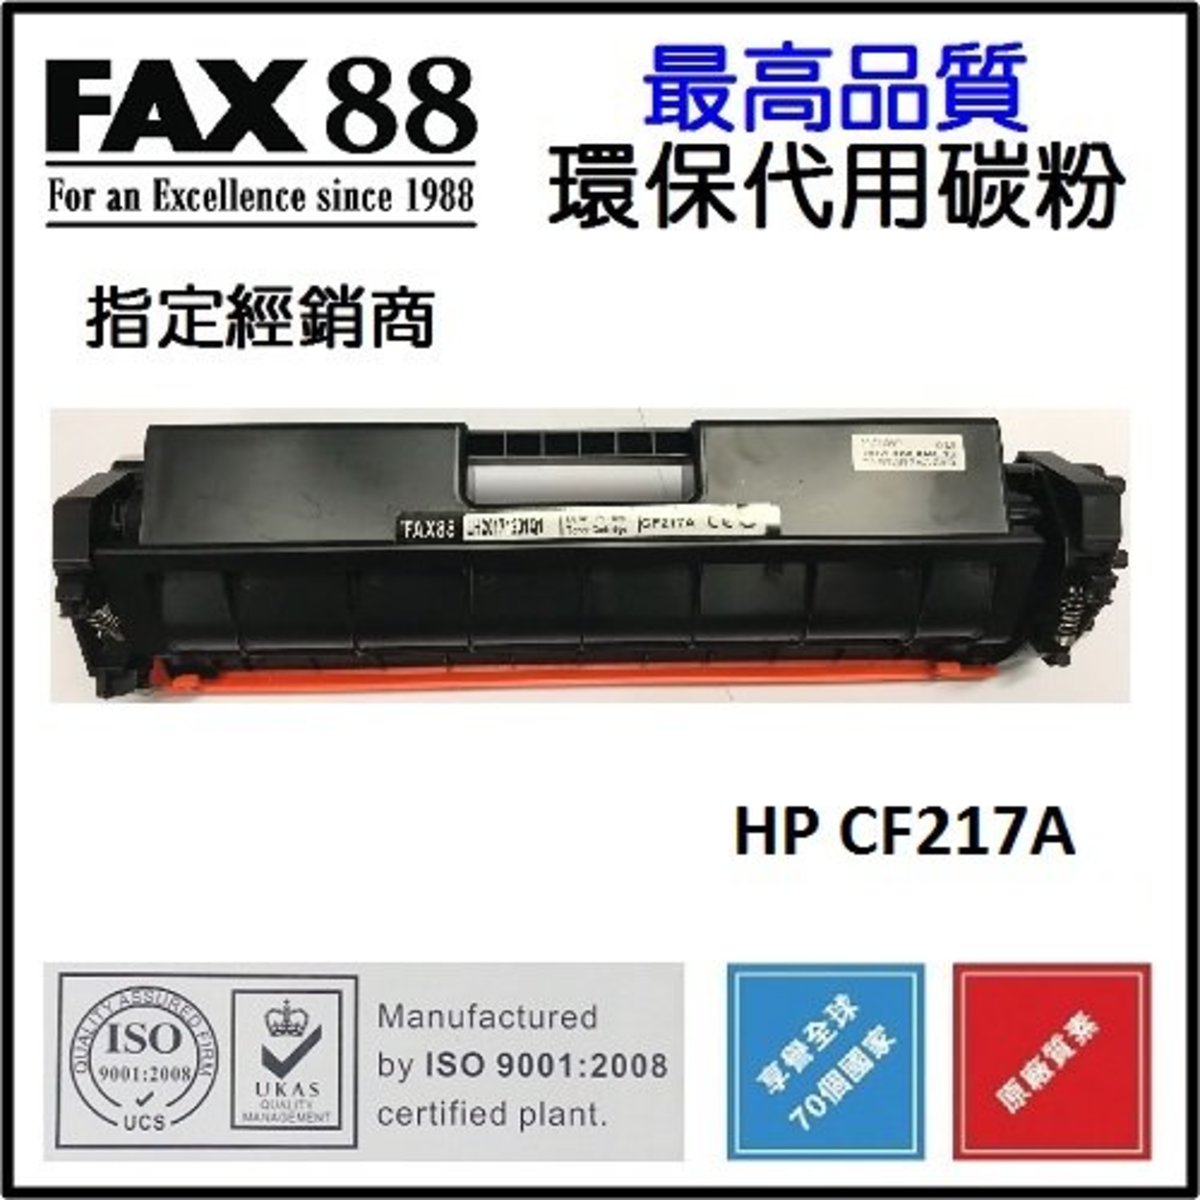 FAX88 HP CF217A 代用/環保碳粉